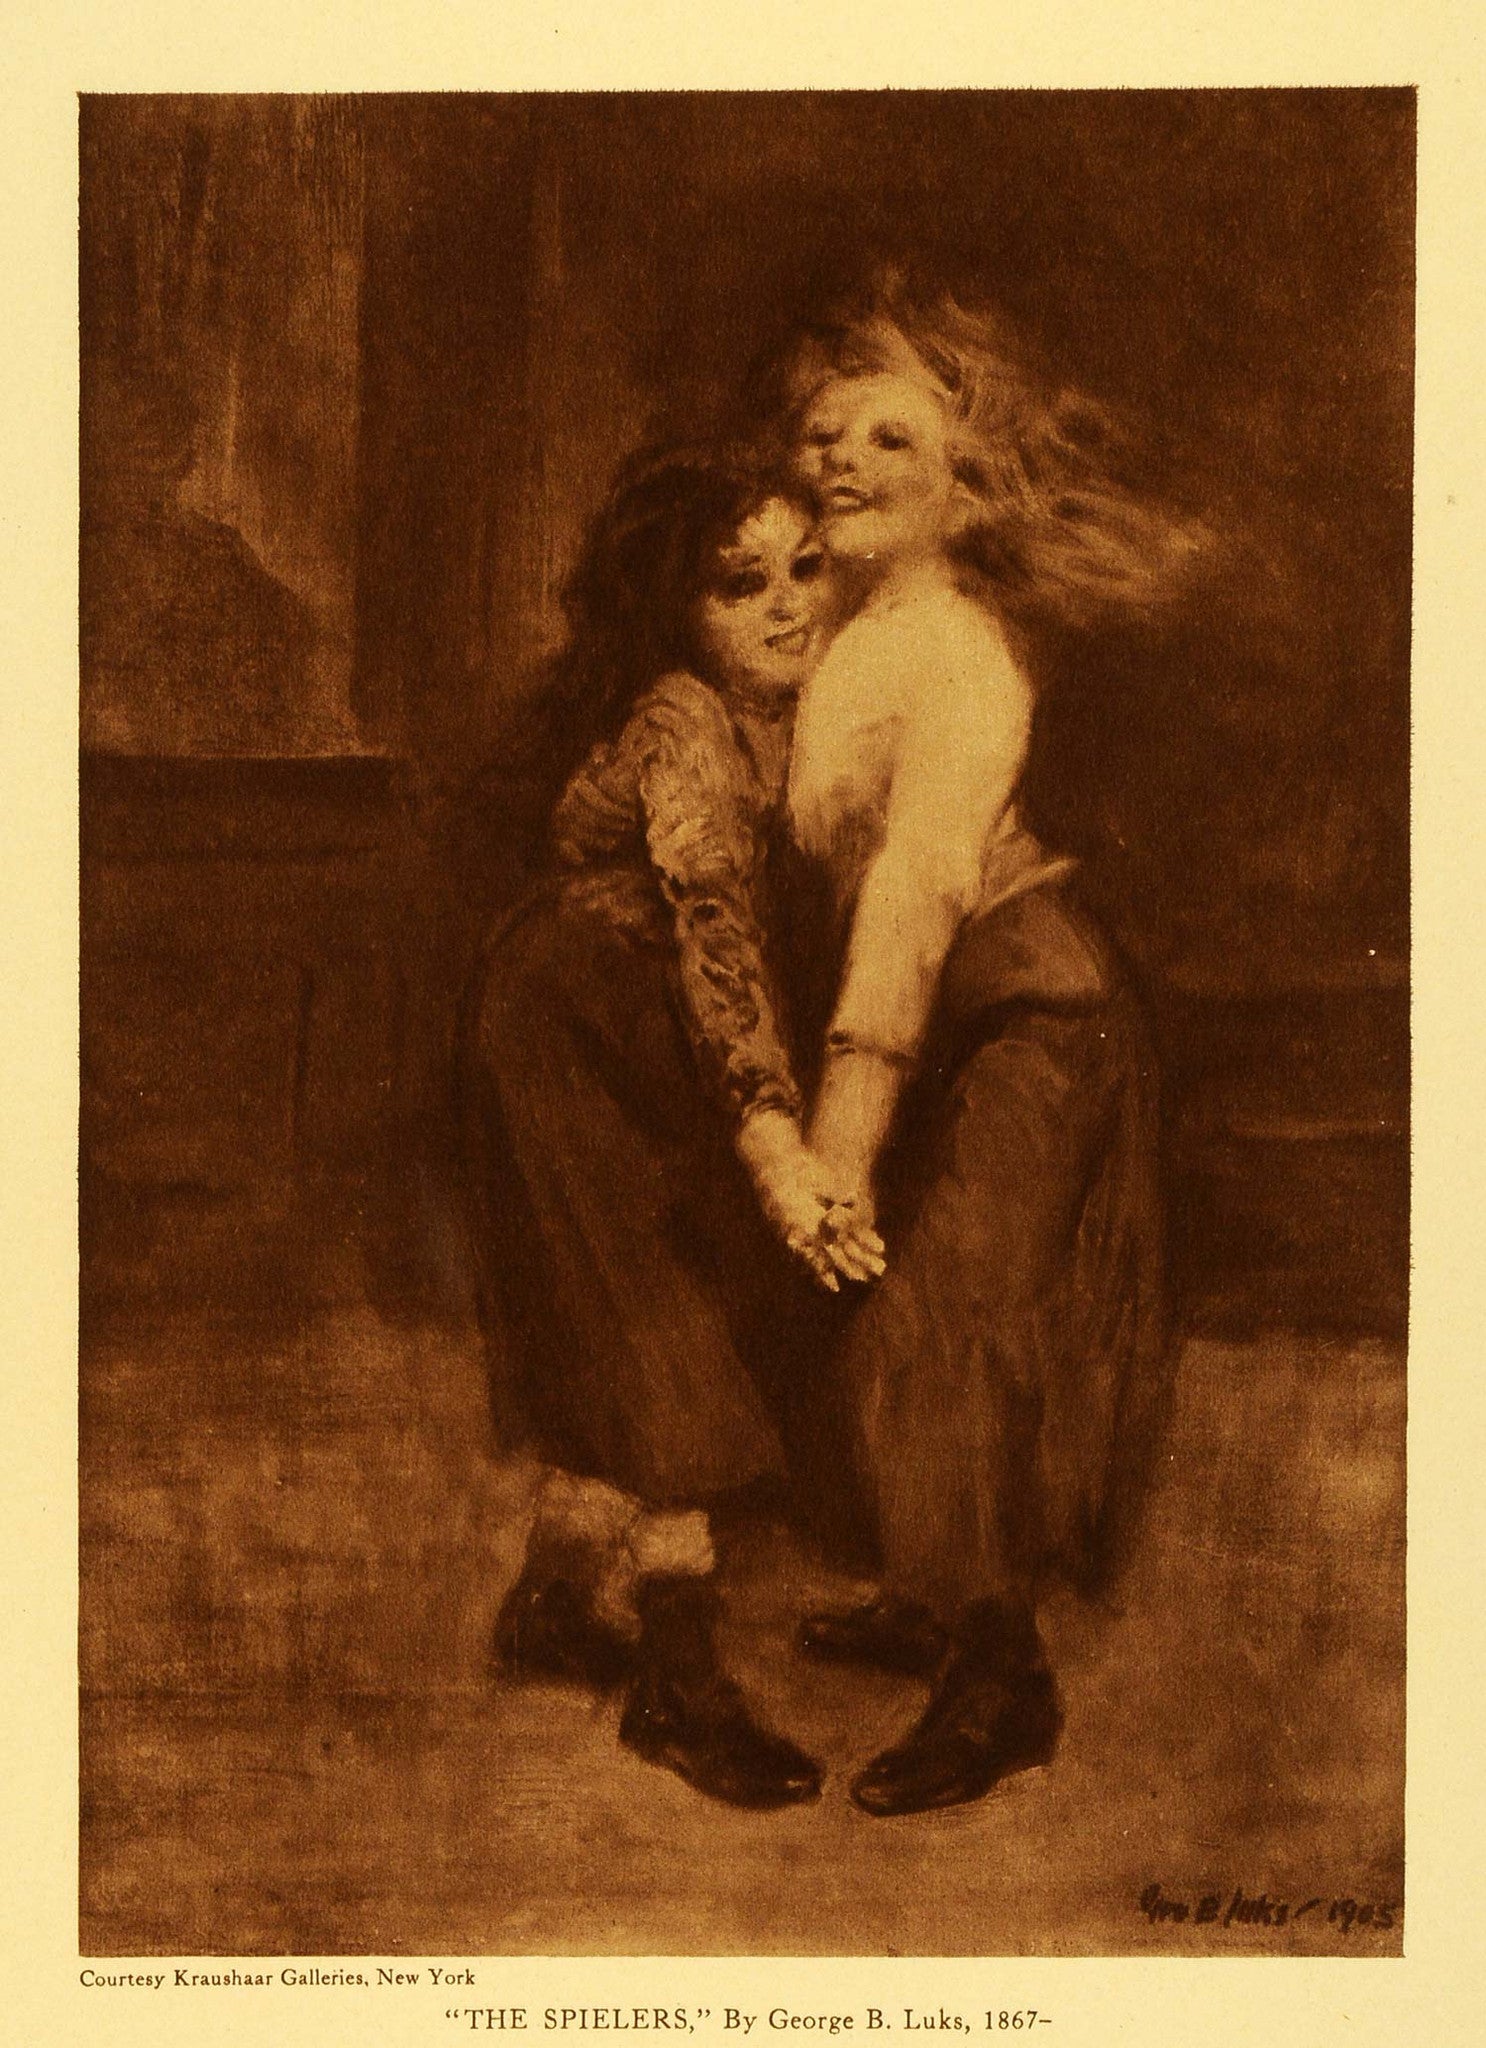 1923 Rotogravure Spielers George Luks Kraushaar Galleries New York Children TMM1 - Period Paper
